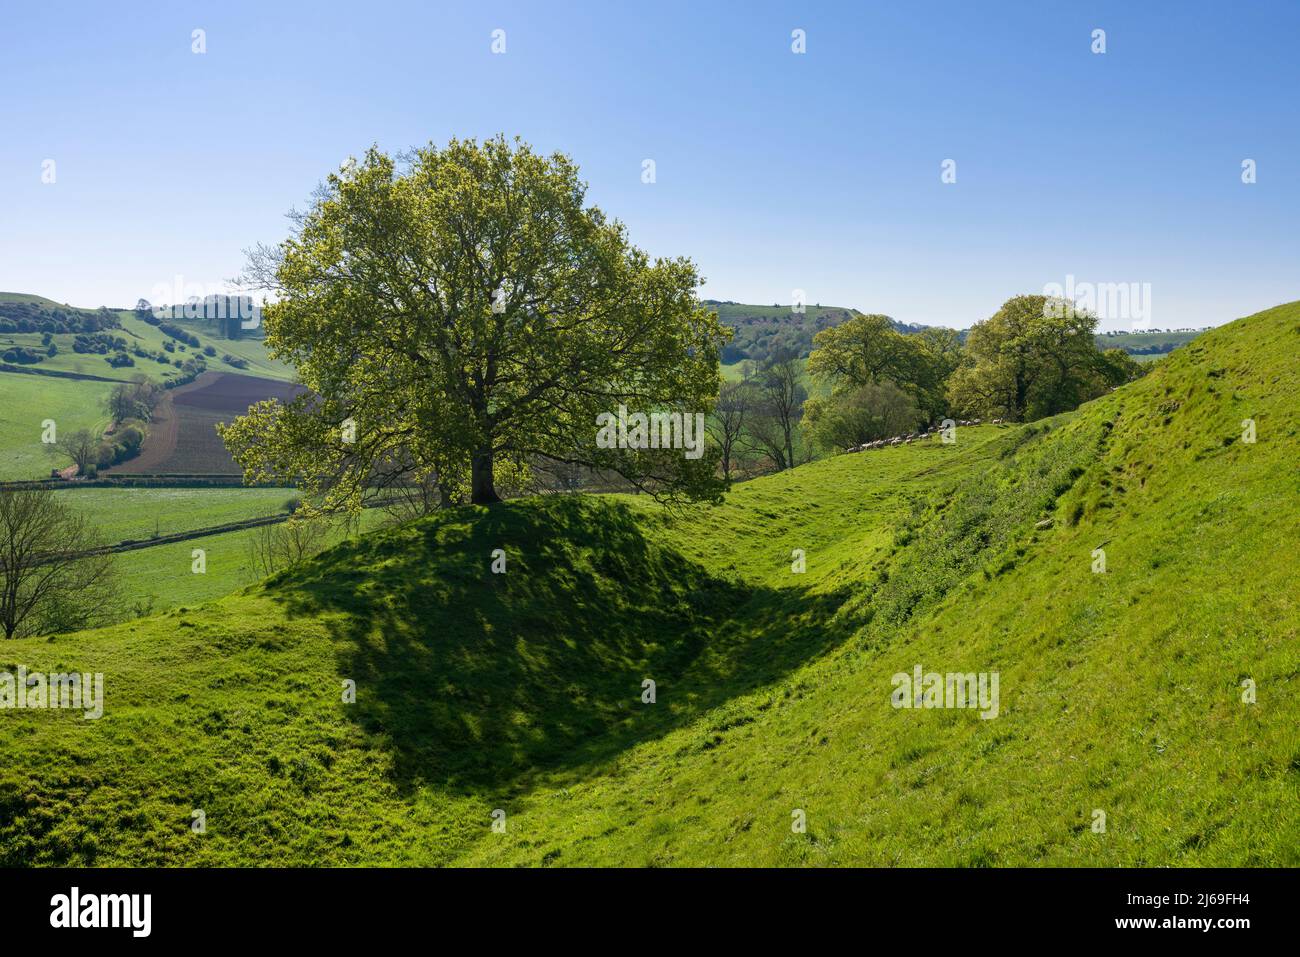 Les remparts du château de Cadbury, une colline de bronze et de fer connue localement sous le nom de Camelot du roi Arthur. South Cadbury, Somerset, Angleterre. Banque D'Images